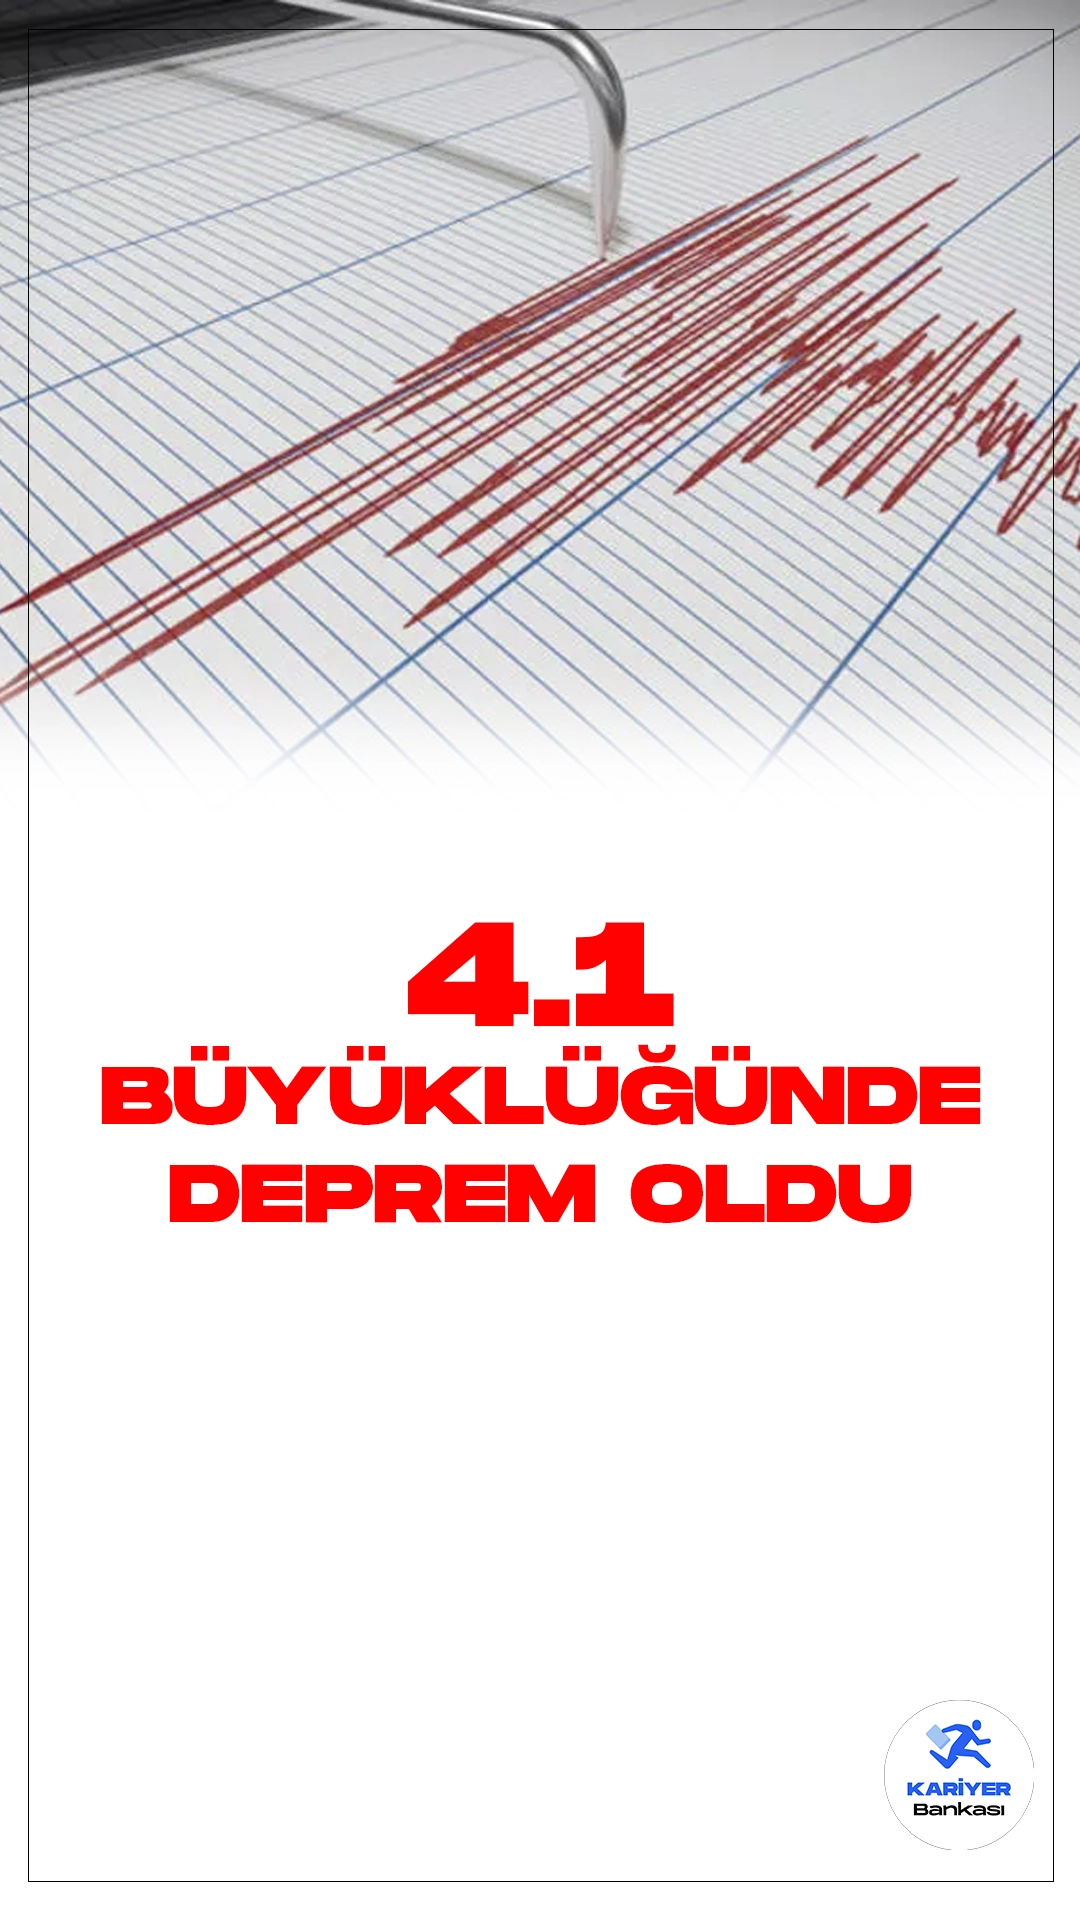 Son Dakika: Antalya'da 4.1 Büyüklüğünde Deprem Oldu. İçişleri Bakanlığı Afet ve Acil Durum Yönetimi Başkanlığı Deprem Dairesi tarafından yayımlanan son dakika verilerinde, Antalya'nın Kumluca ilçesinde 4.1 büyüklüğünde deprem meydana geldiği aktarıldı.